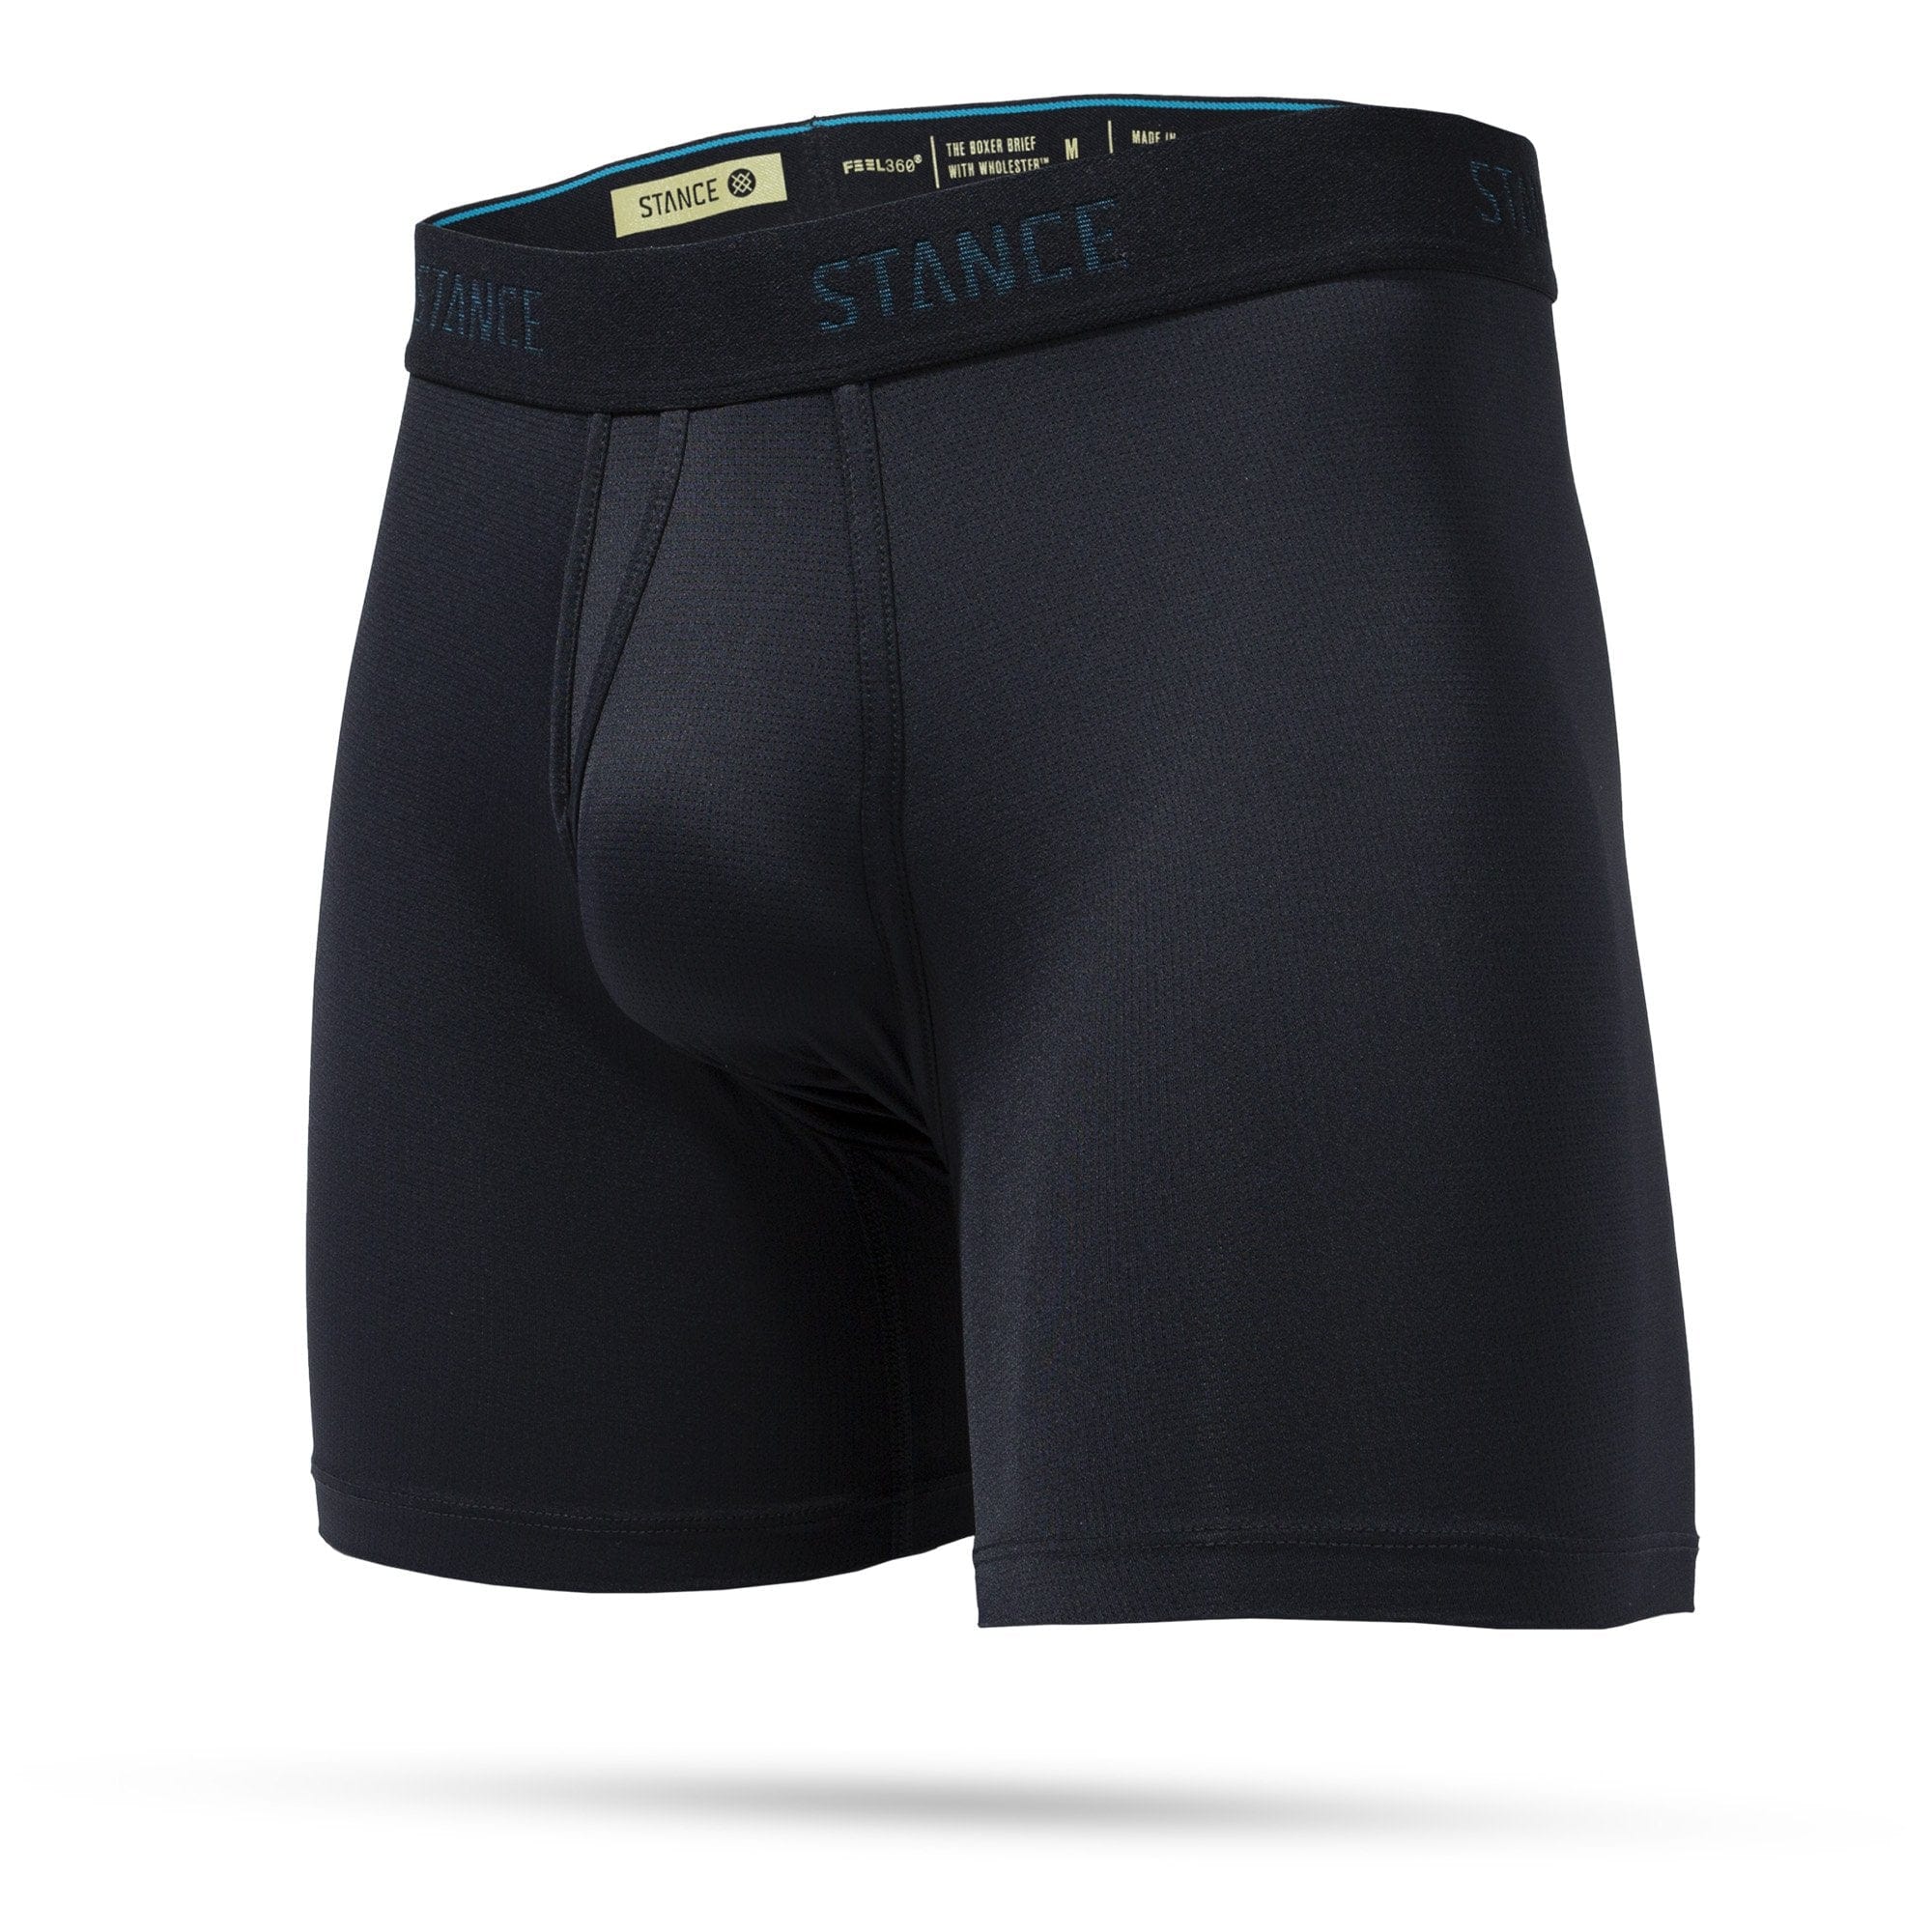 Stance Cotton Boxer Brief Pack | Men's Underwear | Stance Canada